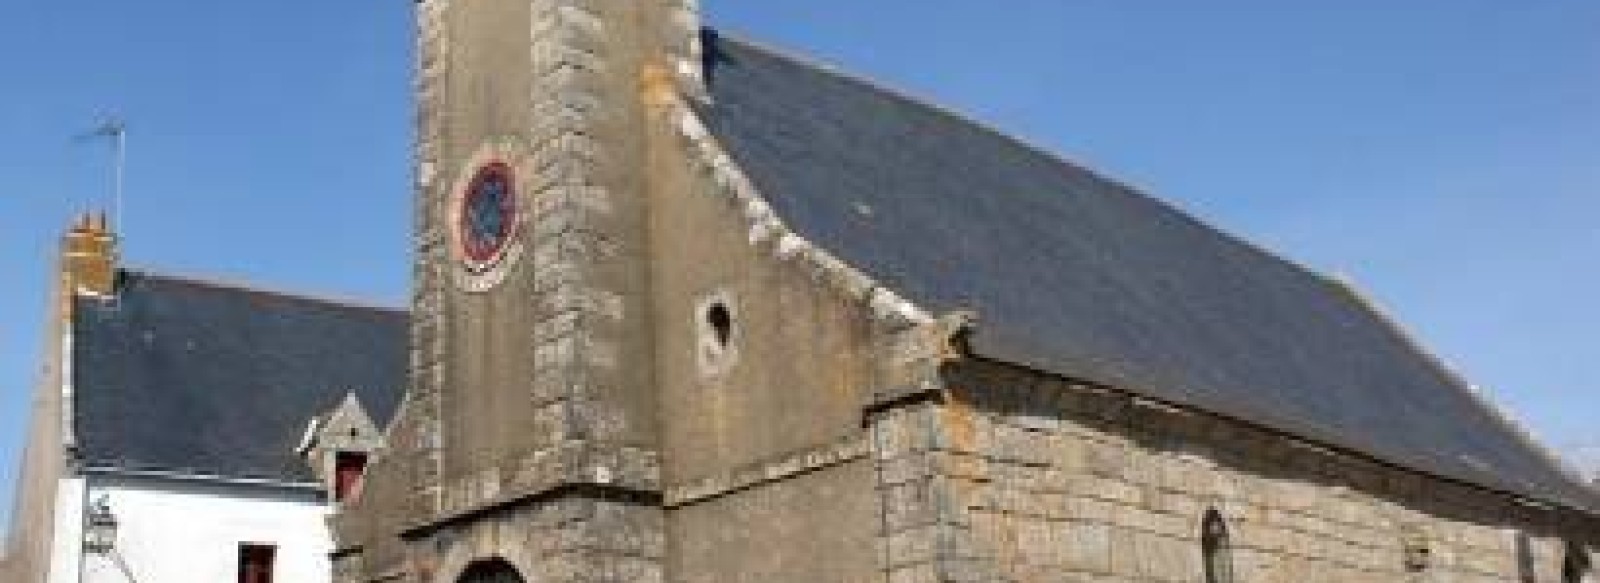 Chapelle Saint-Marc de Kervalet